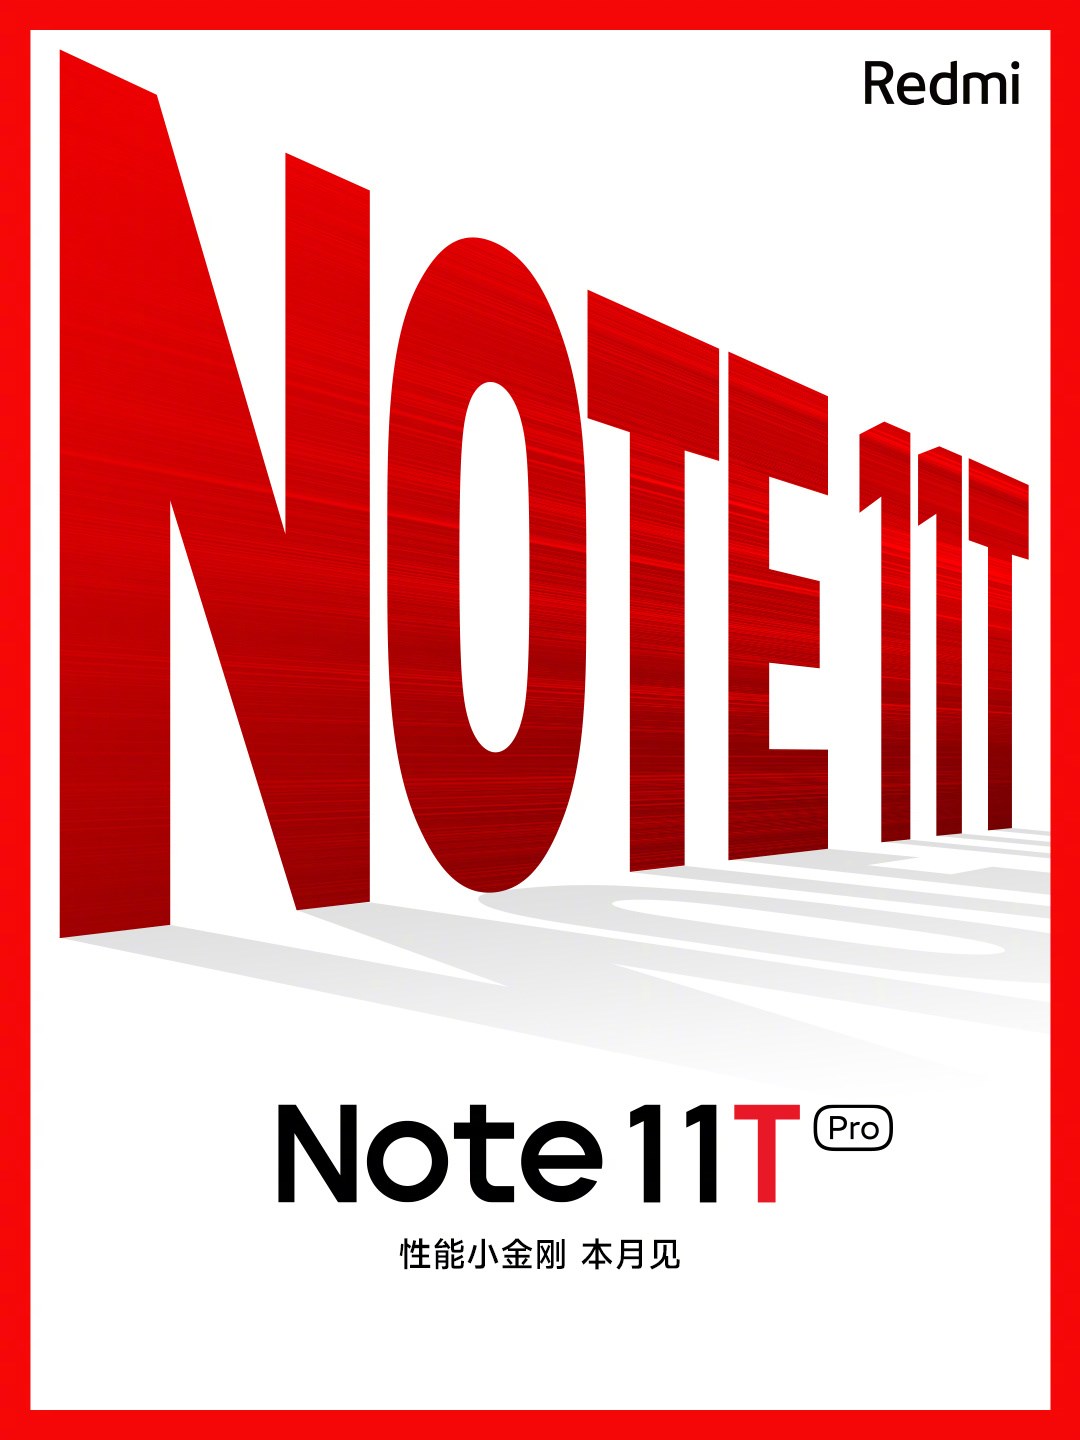 Redmi Note 12 yerine Redmi Note 11T serisi geliyor